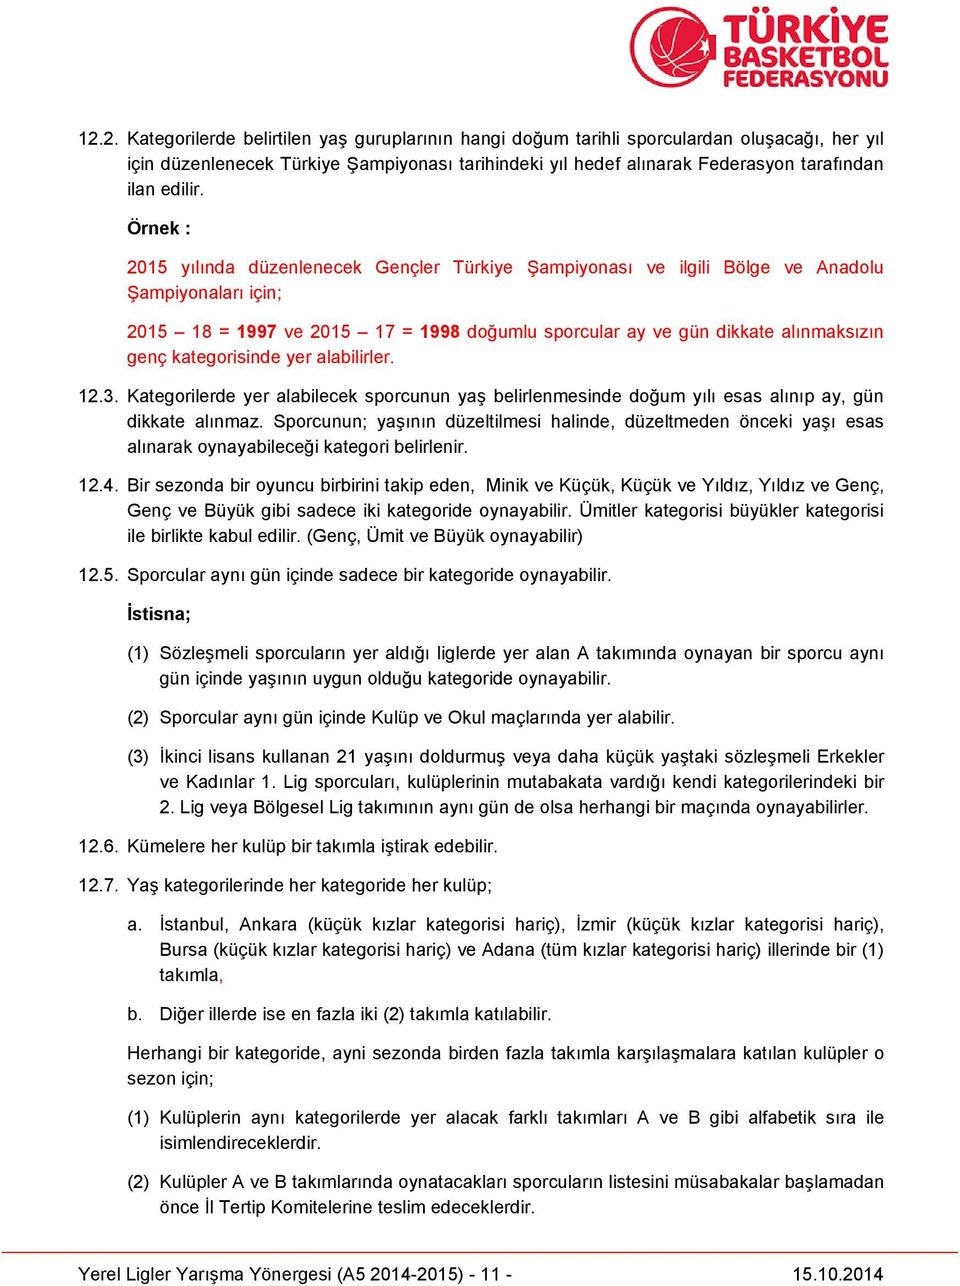 Örnek : 2015 yılında düzenlenecek Gençler Türkiye Şampiyonası ve ilgili Bölge ve Anadolu Şampiyonaları için; 2015 18 = 1997 ve 2015 17 = 1998 doğumlu sporcular ay ve gün dikkate alınmaksızın genç